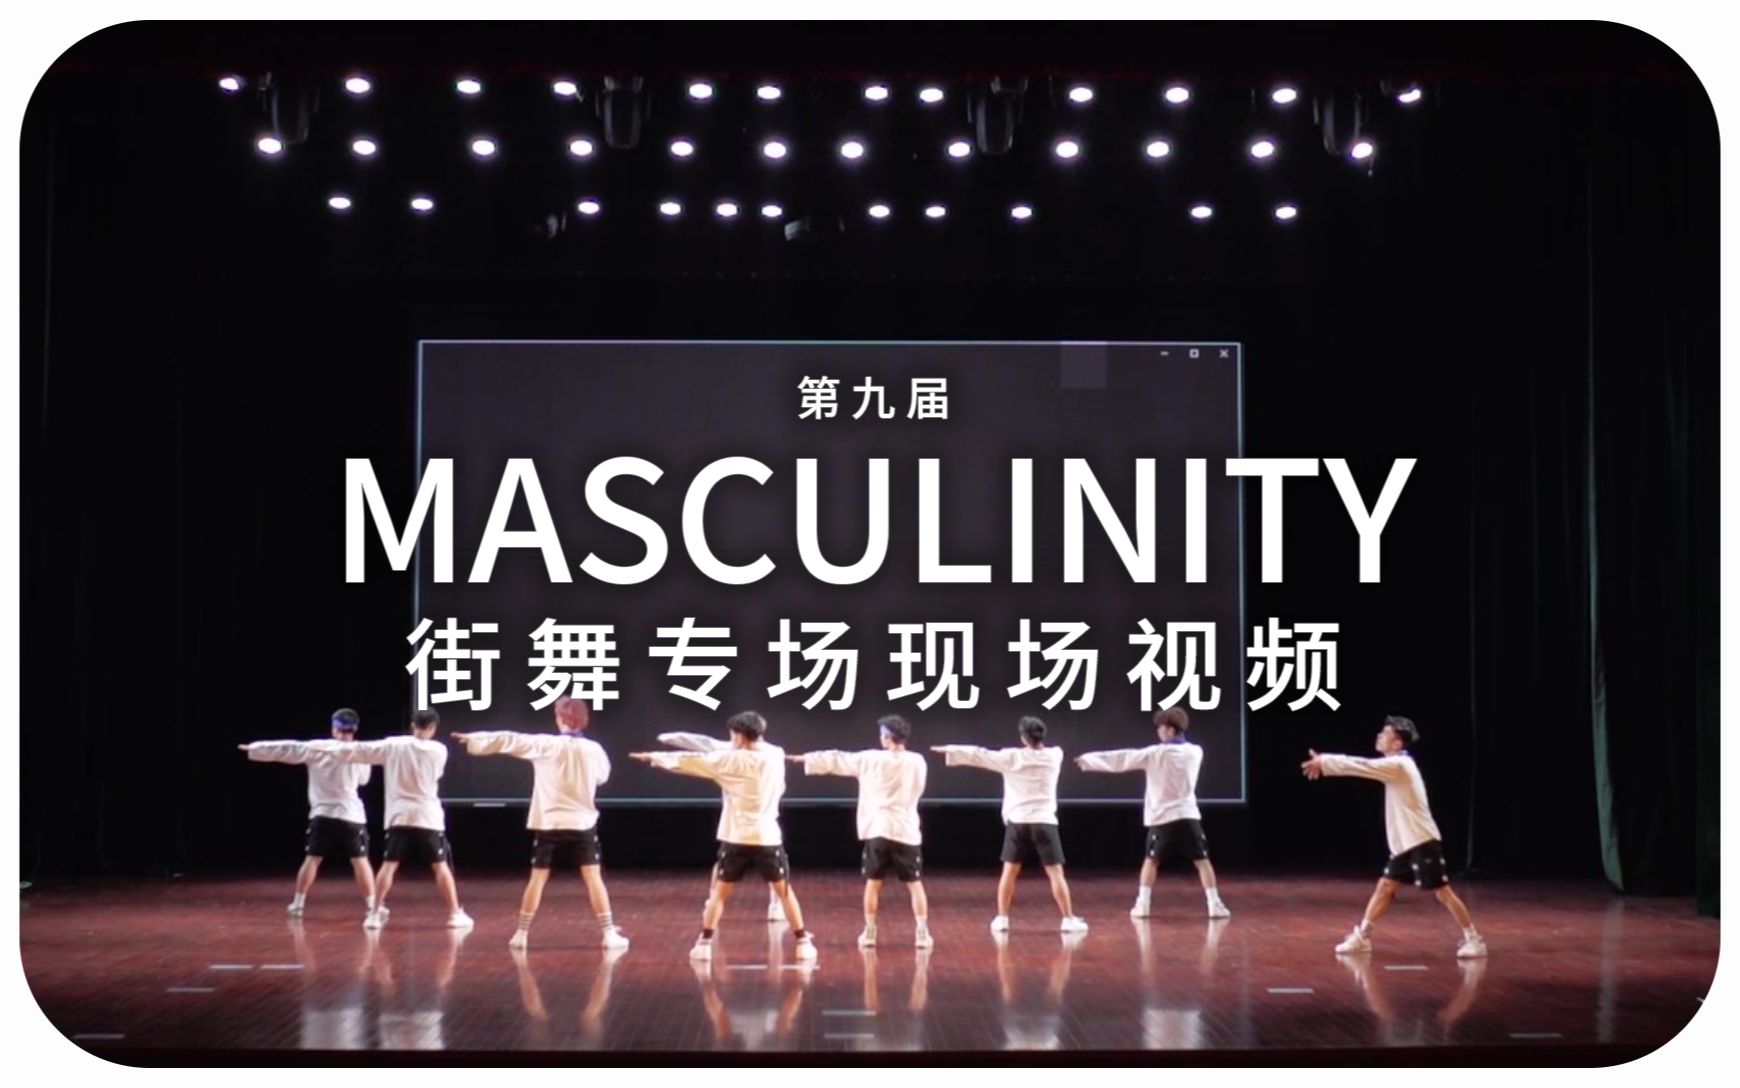 【浙大DFM街舞社】Jazz舞队/Breaking舞队/Hip-hop舞队 - Masculinity（第九届街舞专场现场视频）